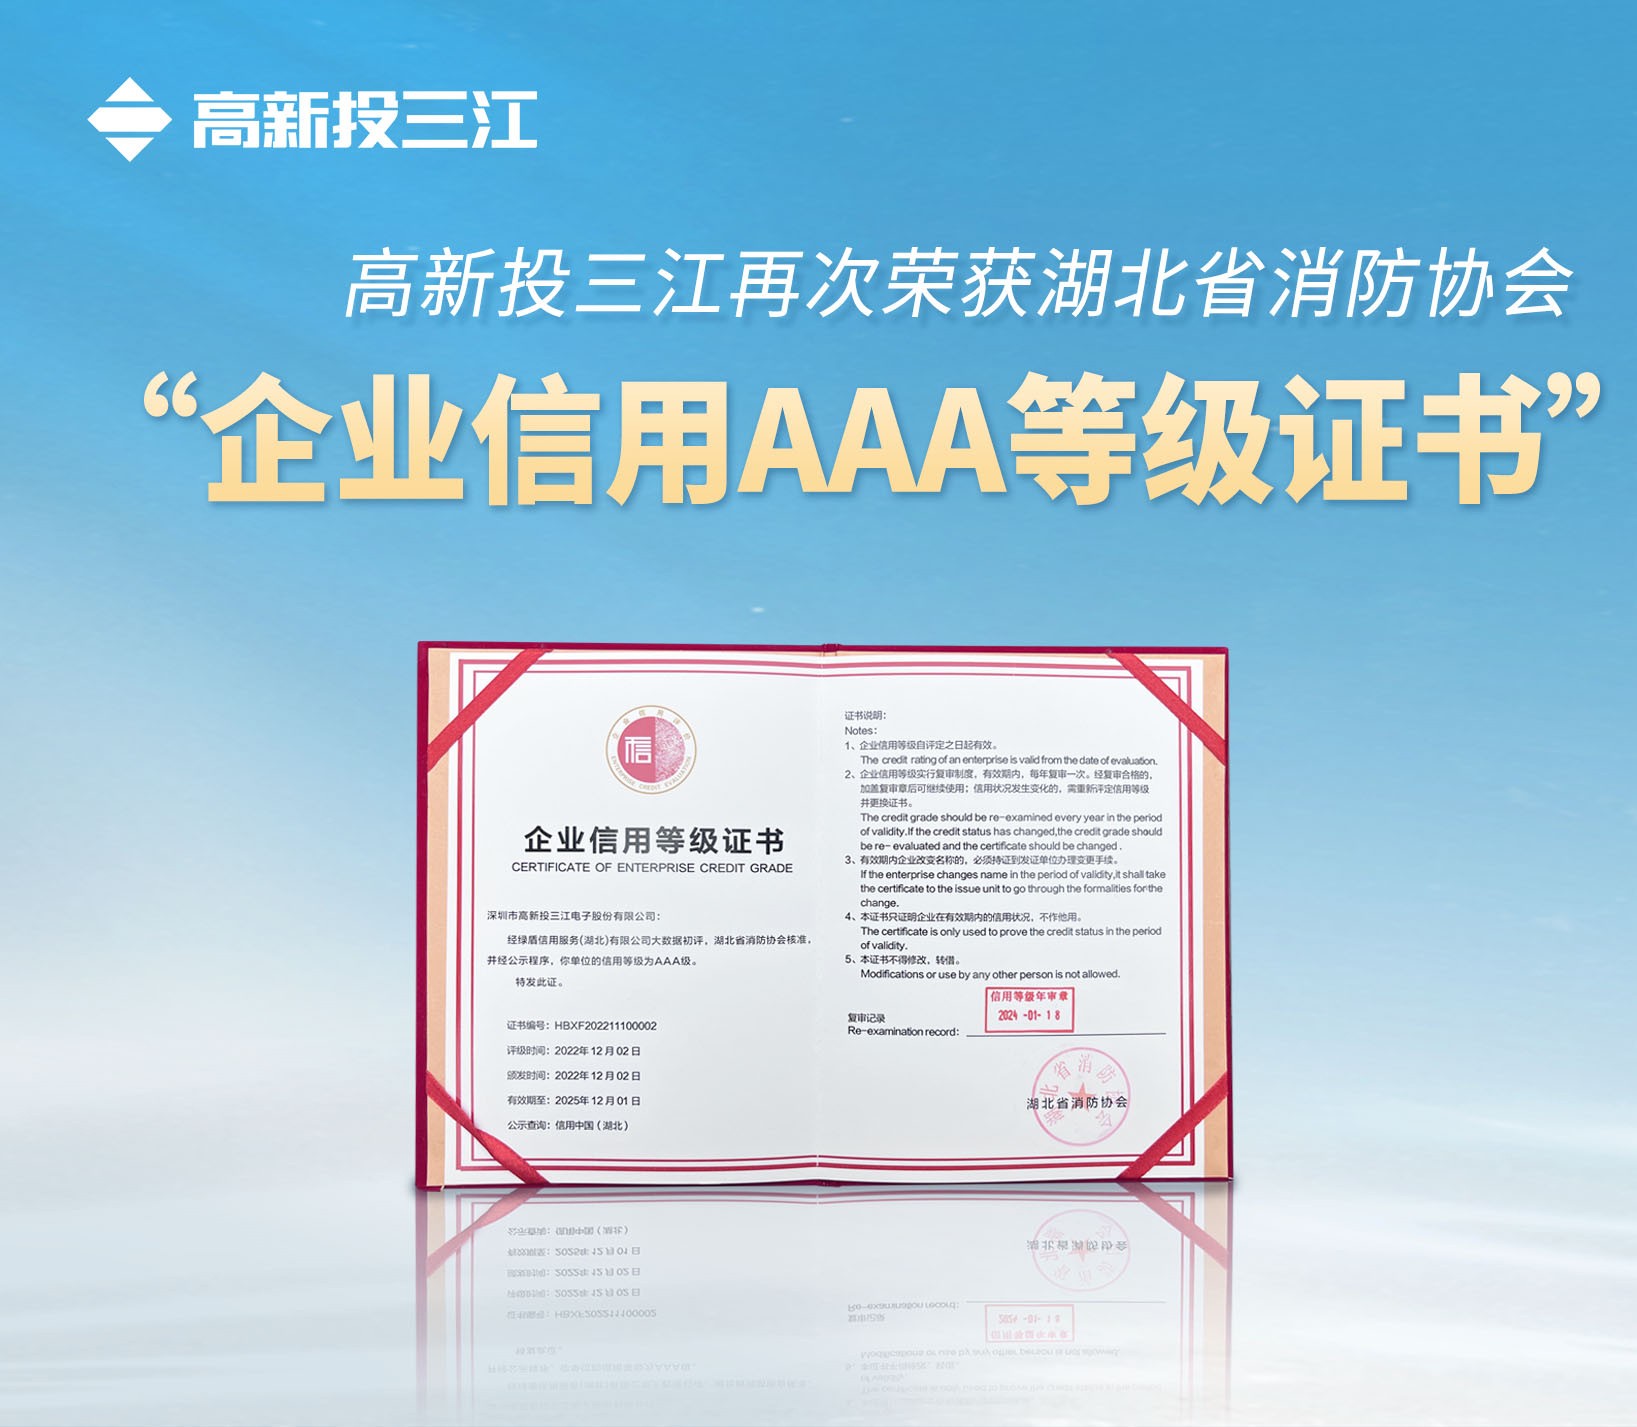 管家婆独家资料大全再次荣获湖北省消防协会 “企业信用AAA等级证书”